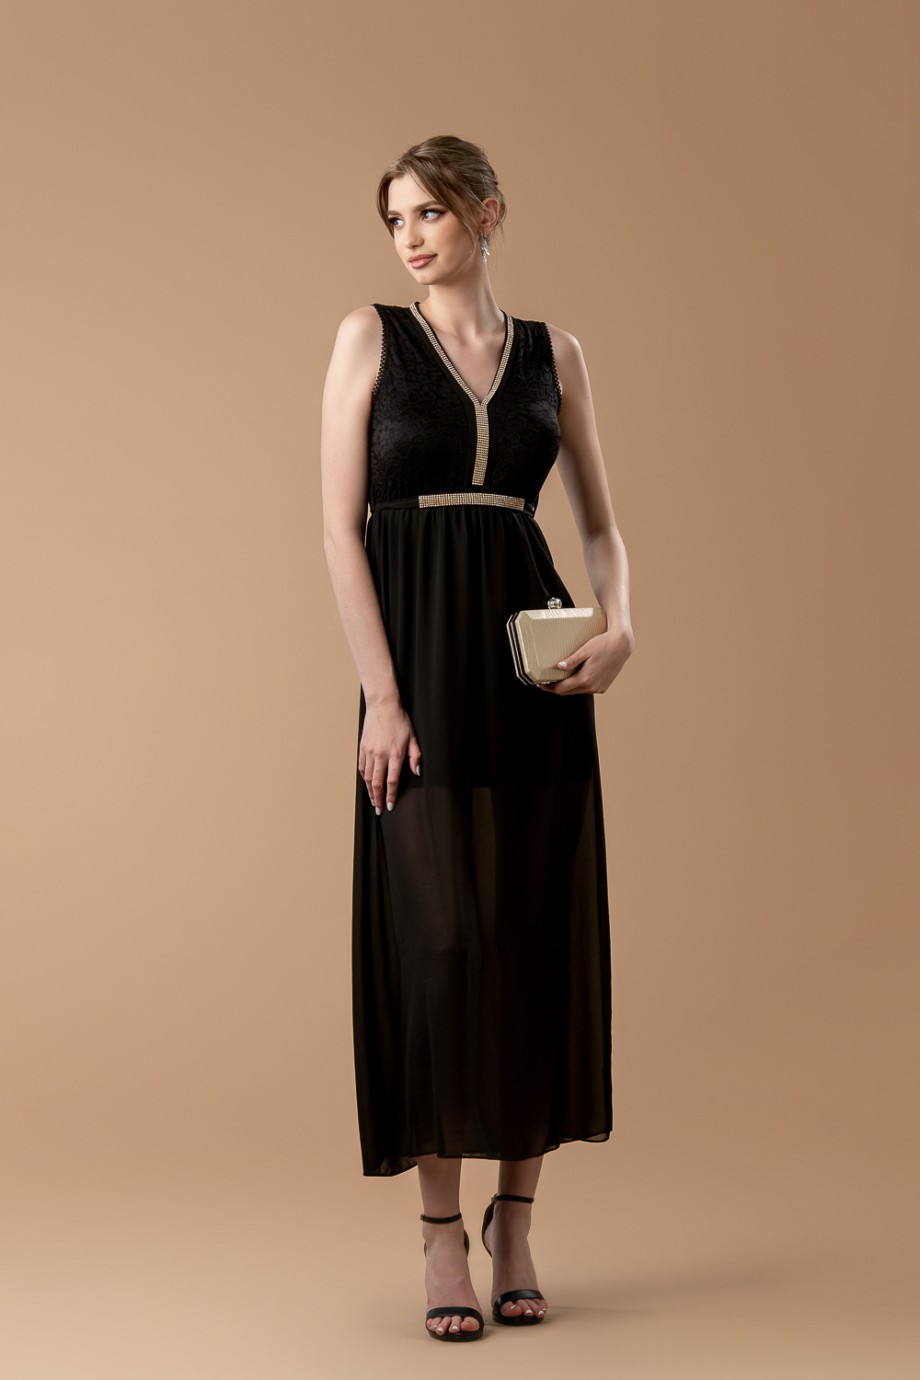 Μακρύ μαύρο φόρεμα με δαντέλα στο μπούστο και χρυσές λεπτομέρειες